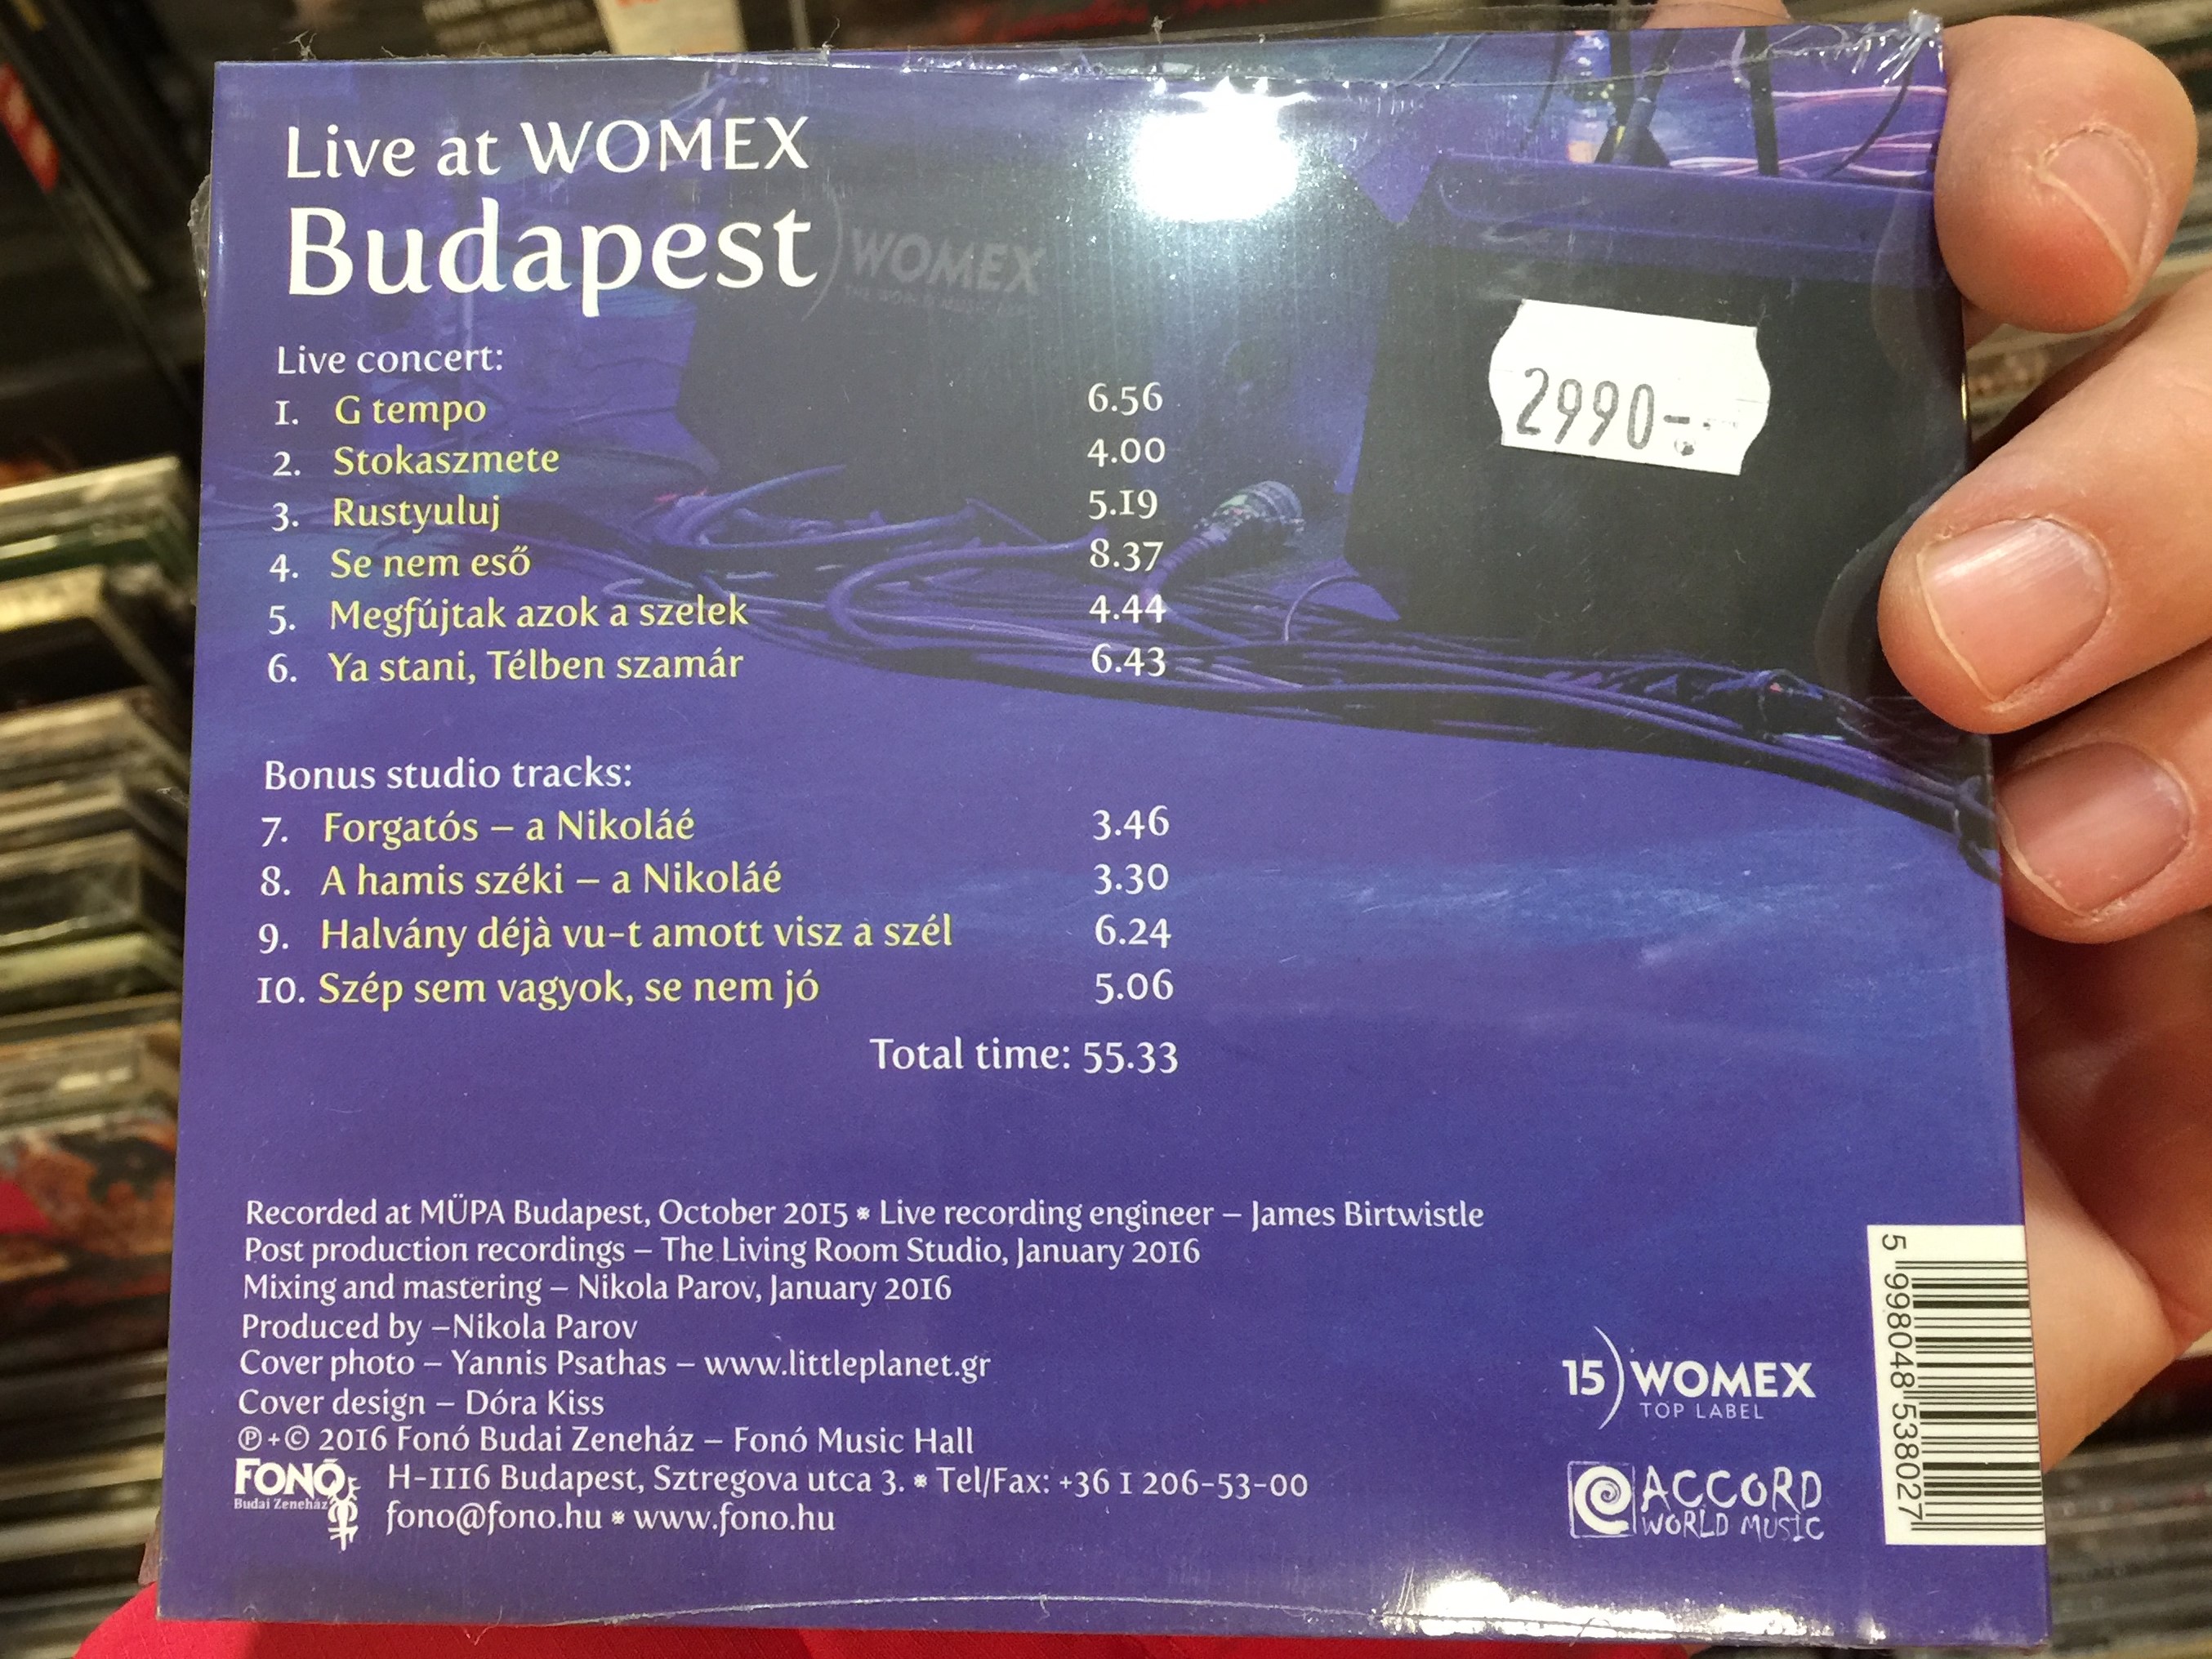 live-at-womex-budapest-herczku-gi-band-fon-budai-zeneh-z-audio-cd-2016-fa-380-2-2-.jpg